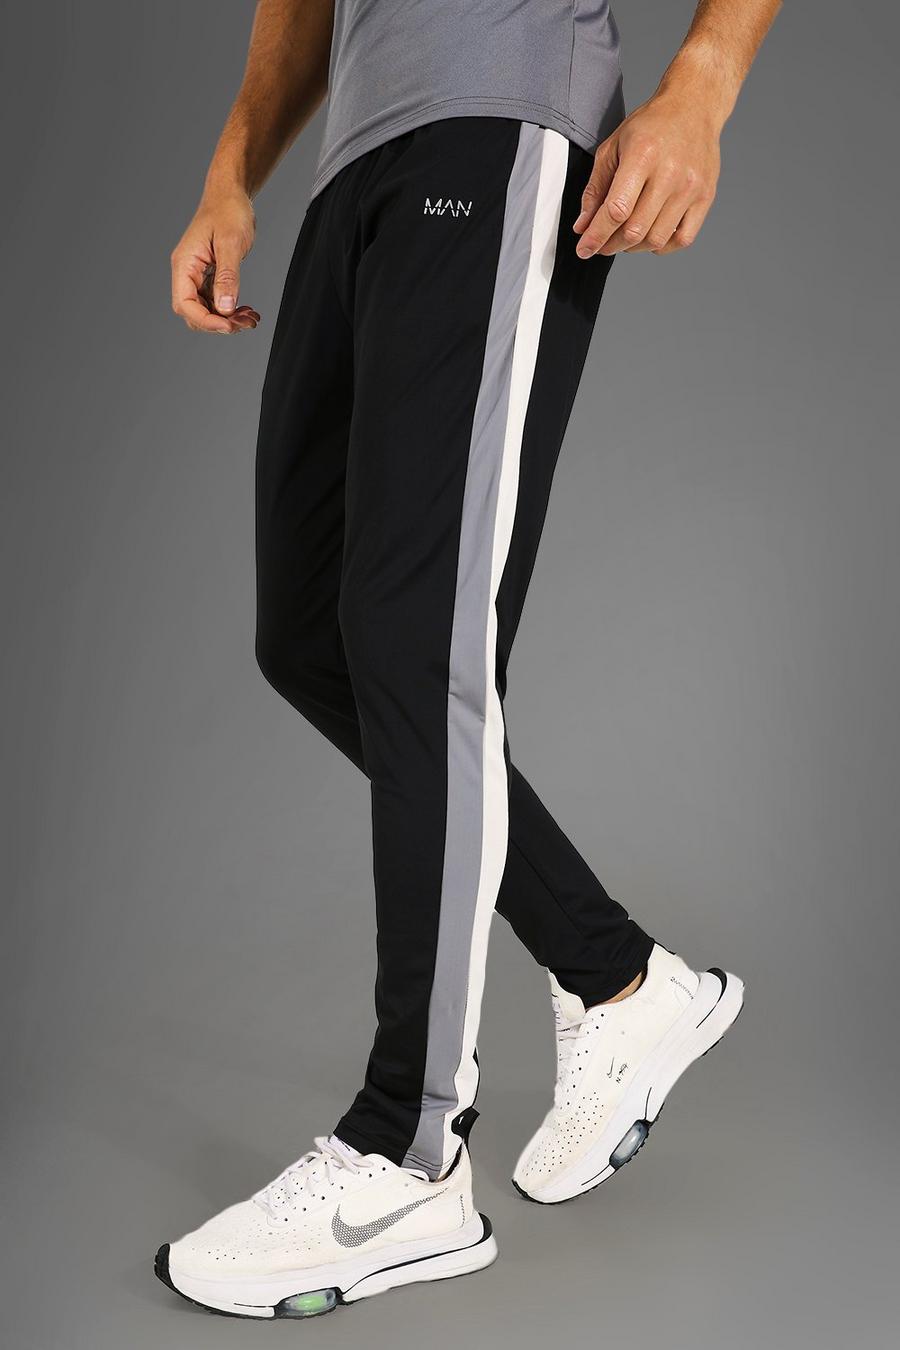 Pantaloni tuta Tall Man Active per alta performance, Black negro image number 1